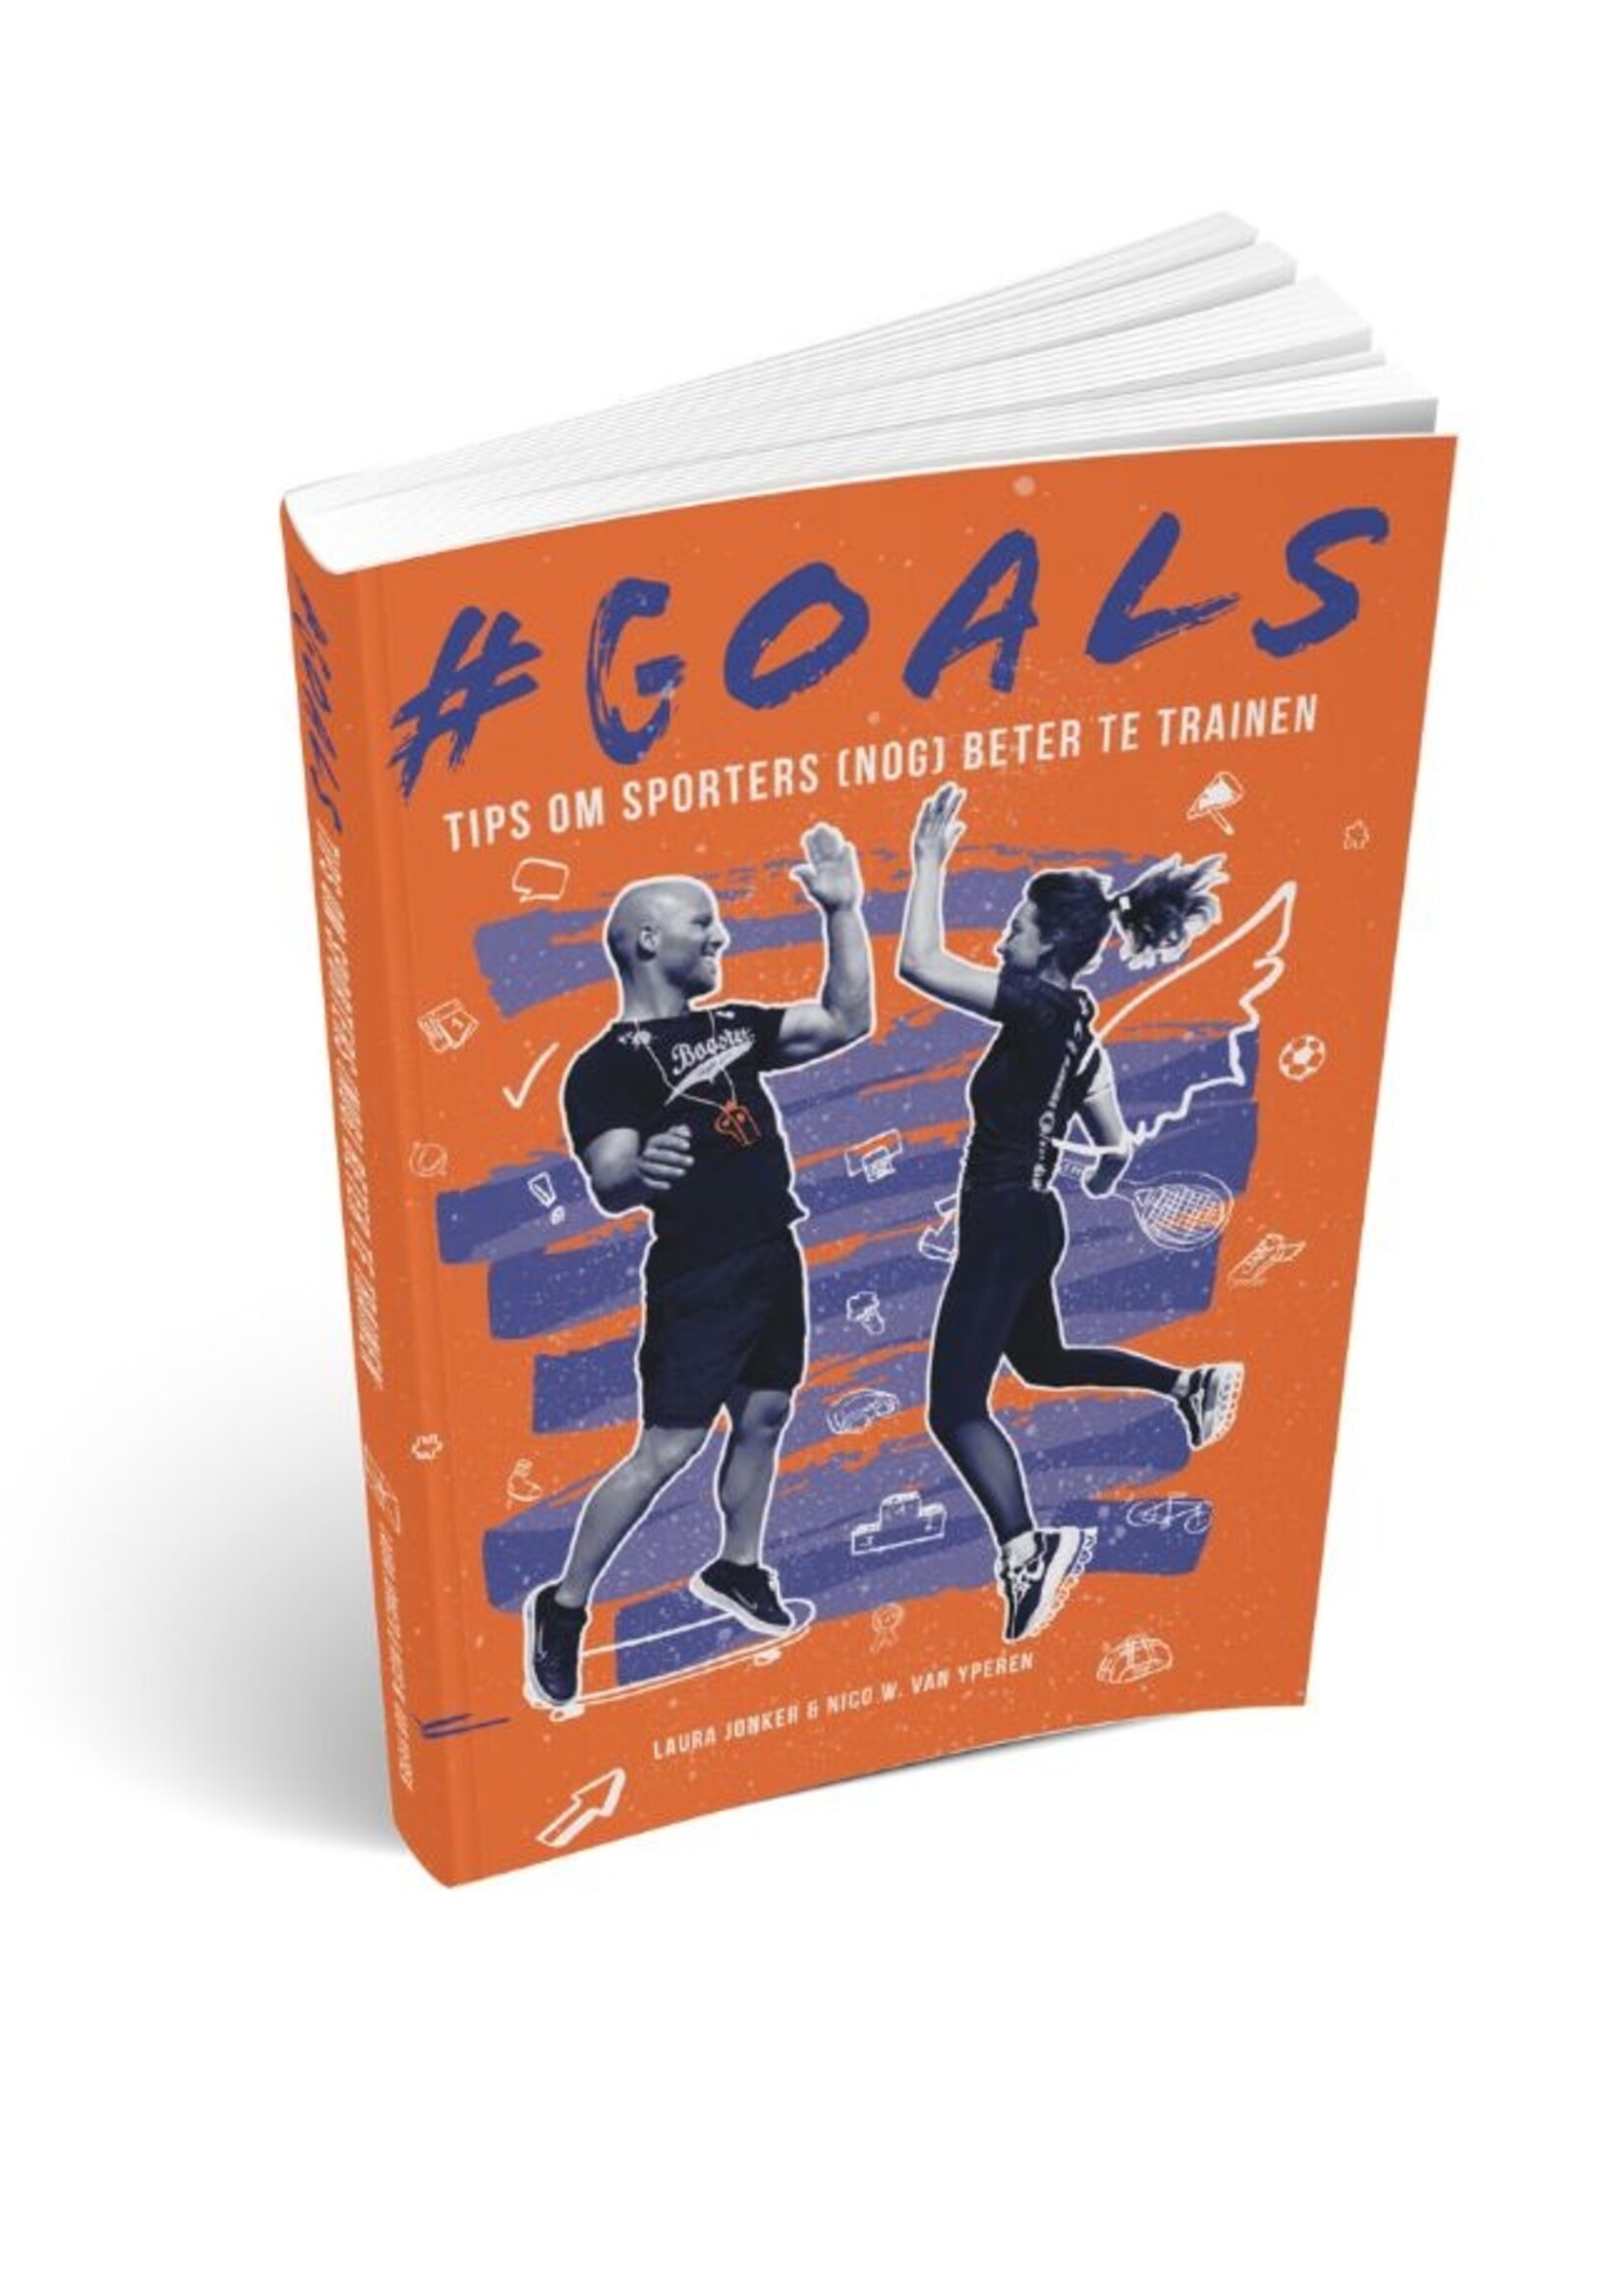 #GOALS - Tips om sporters (nog) beter te trainen